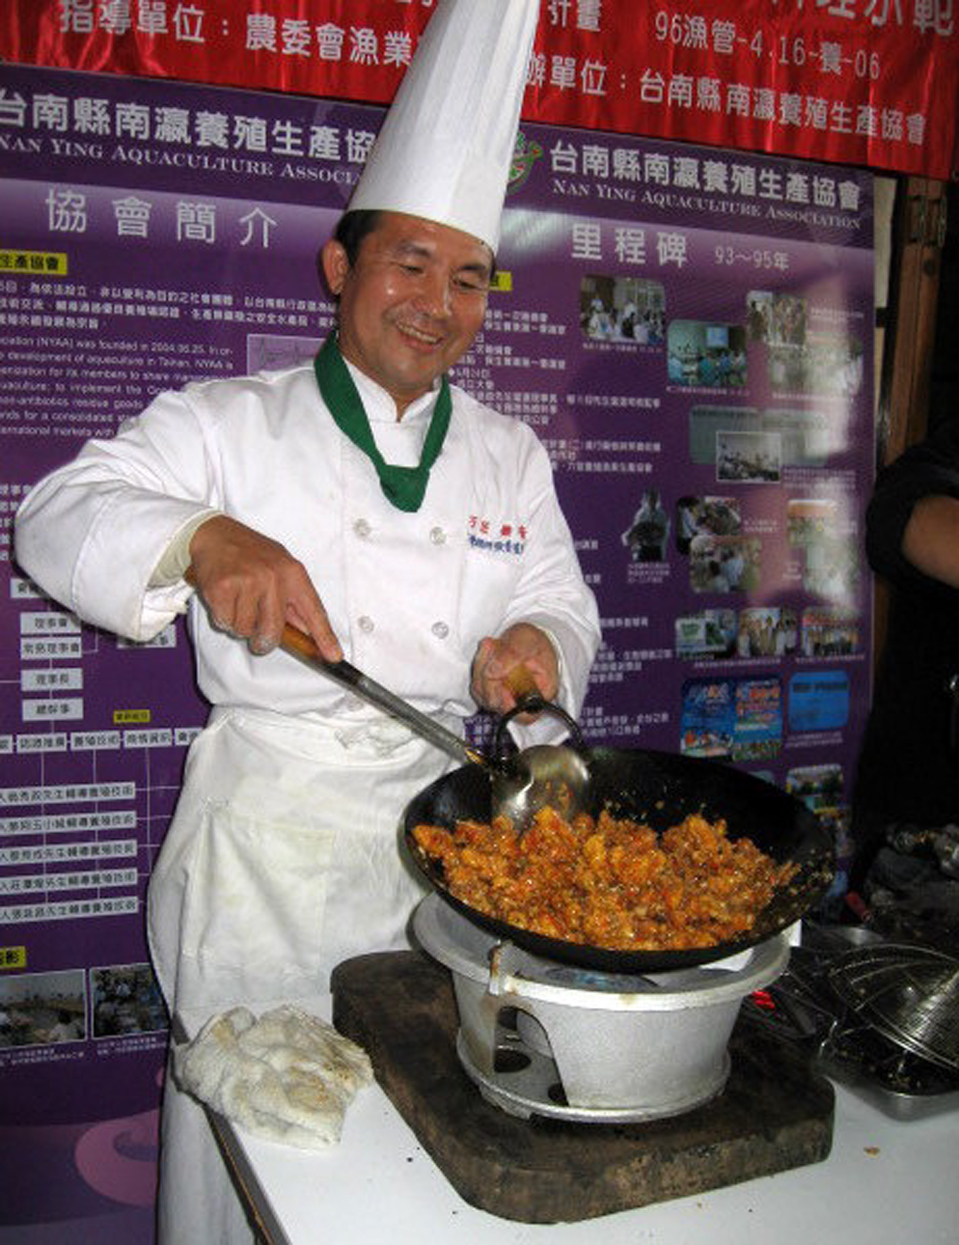 台灣鯛料理達人李宗銘可以一手料理200多道的台灣鯛精緻佳餚。